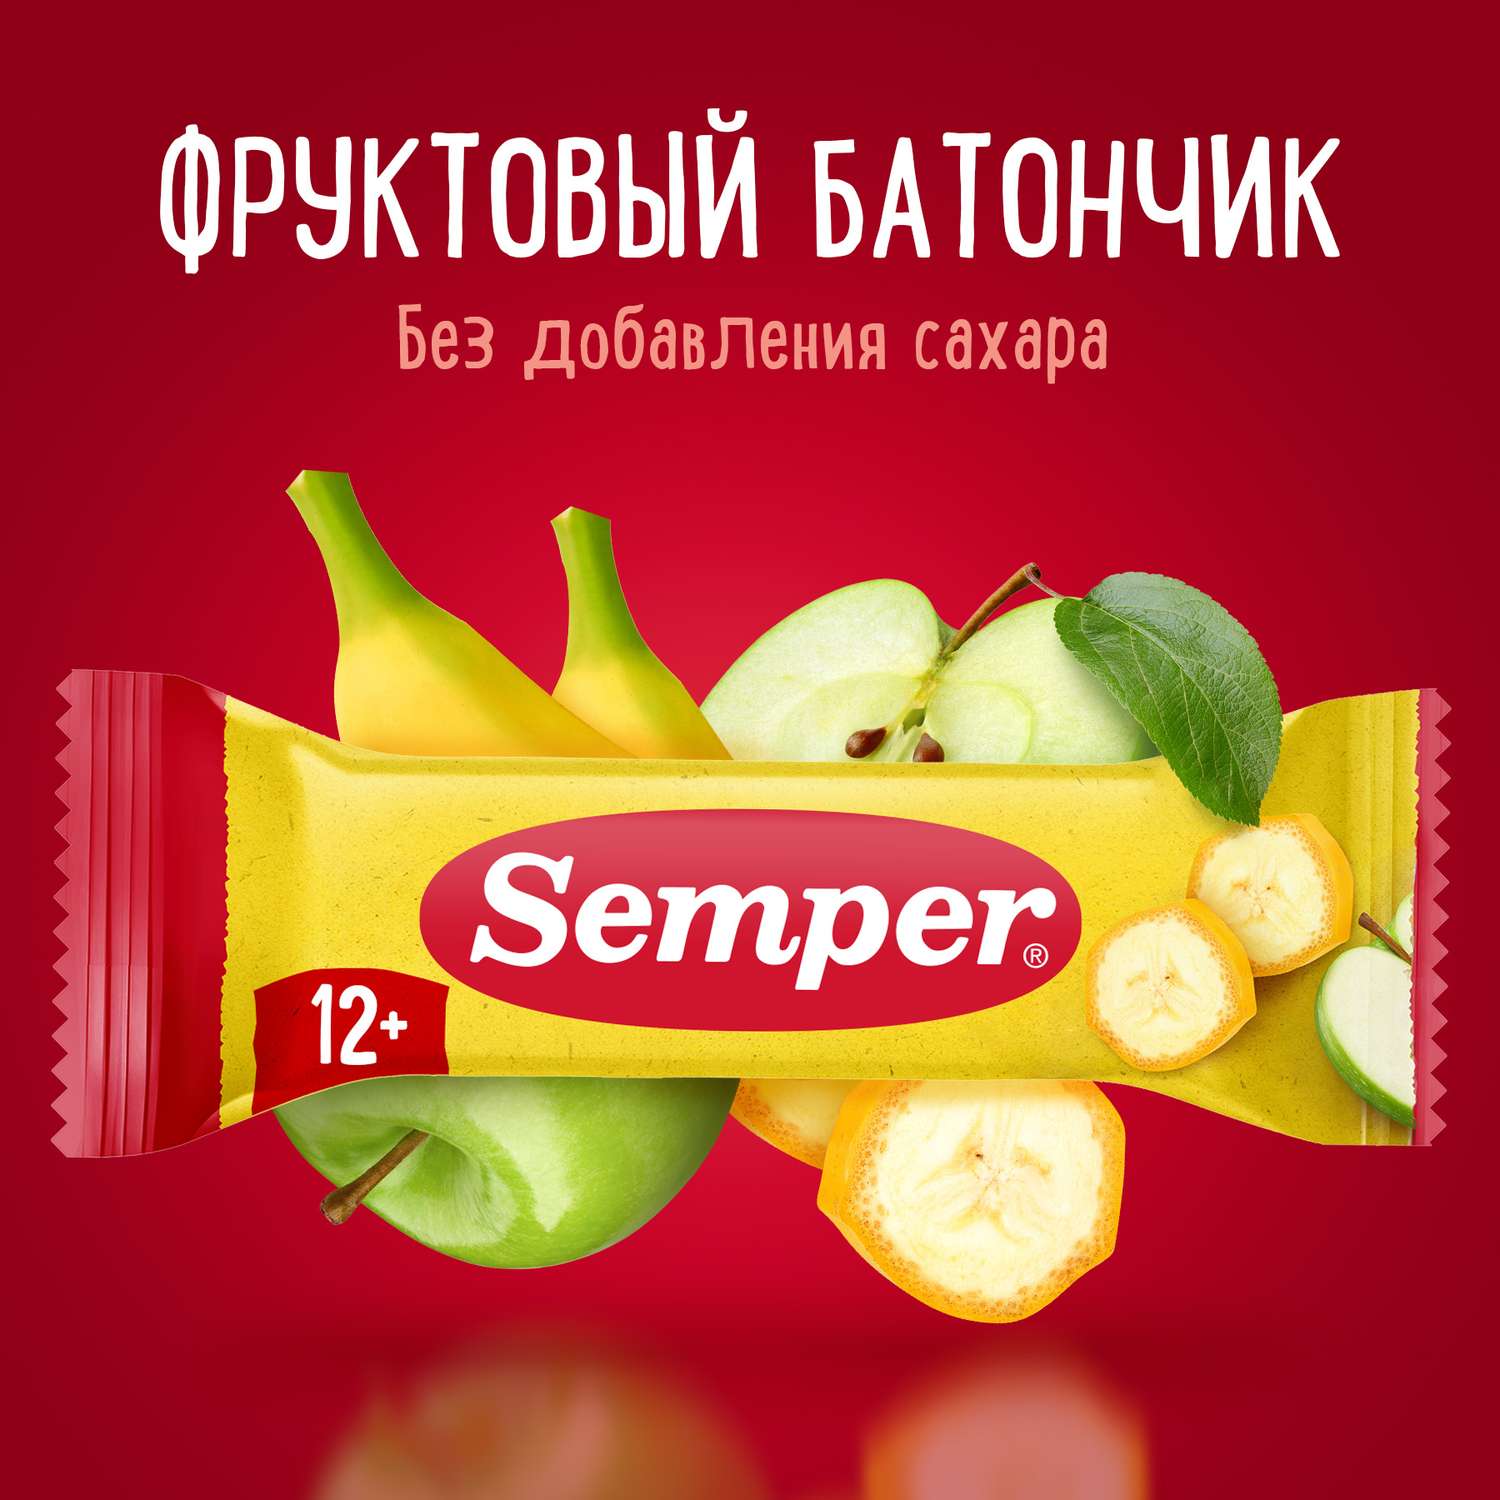 Фруктовый батончик Semper яблоко и банан 15 г - фото 1